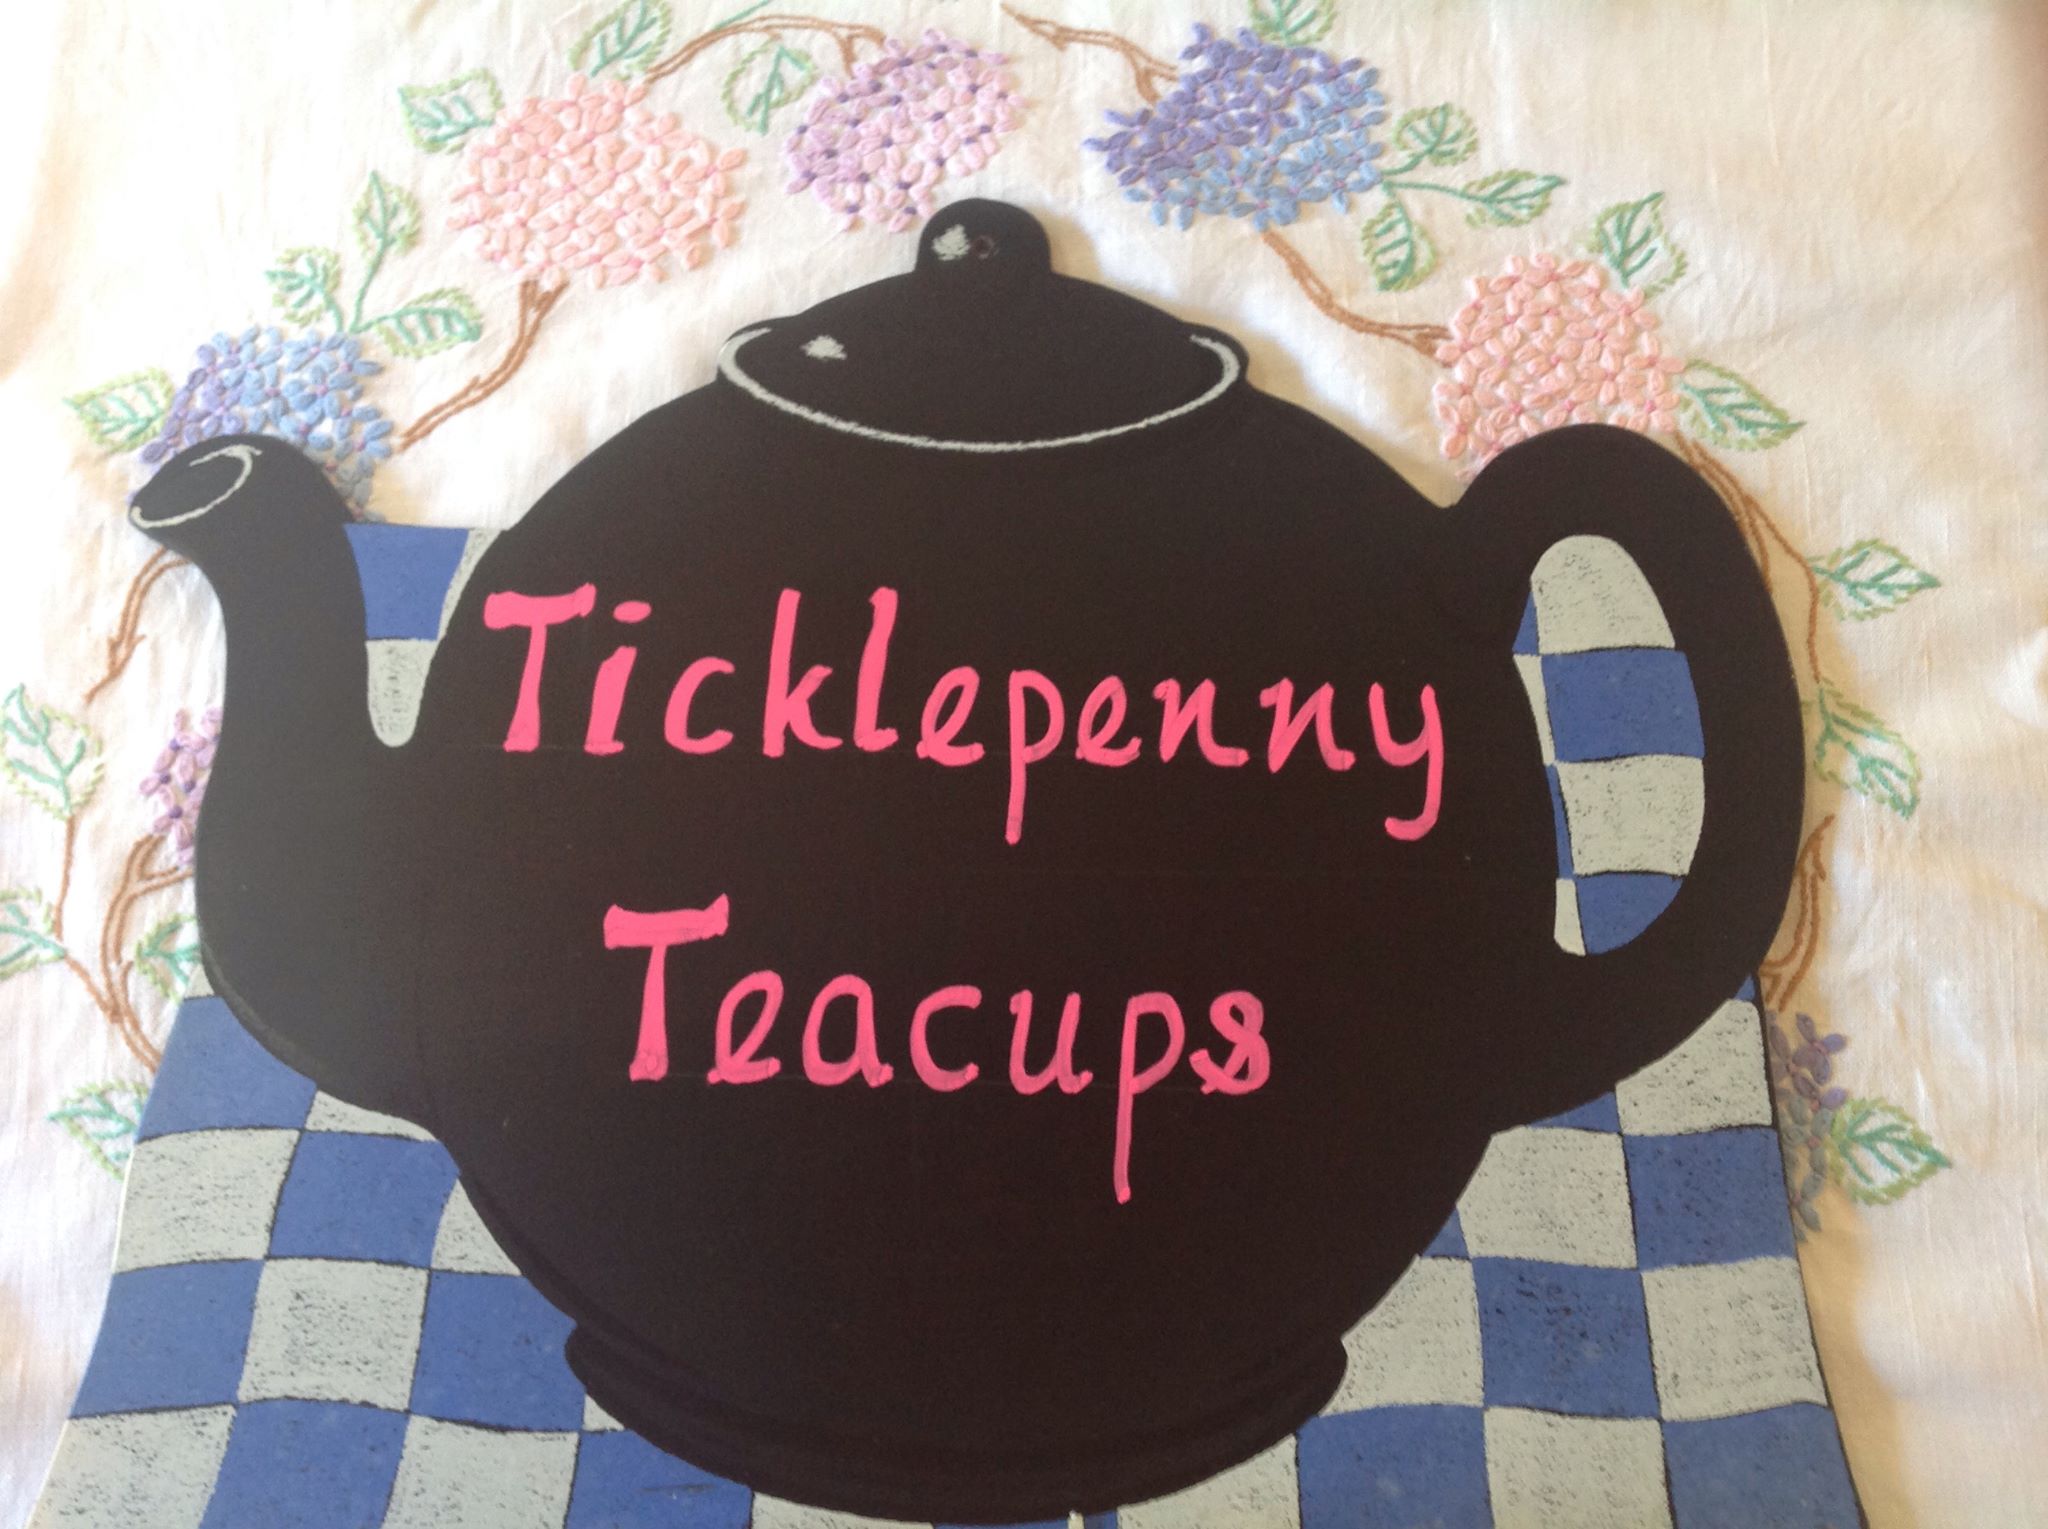 Ticklepenny Teacups